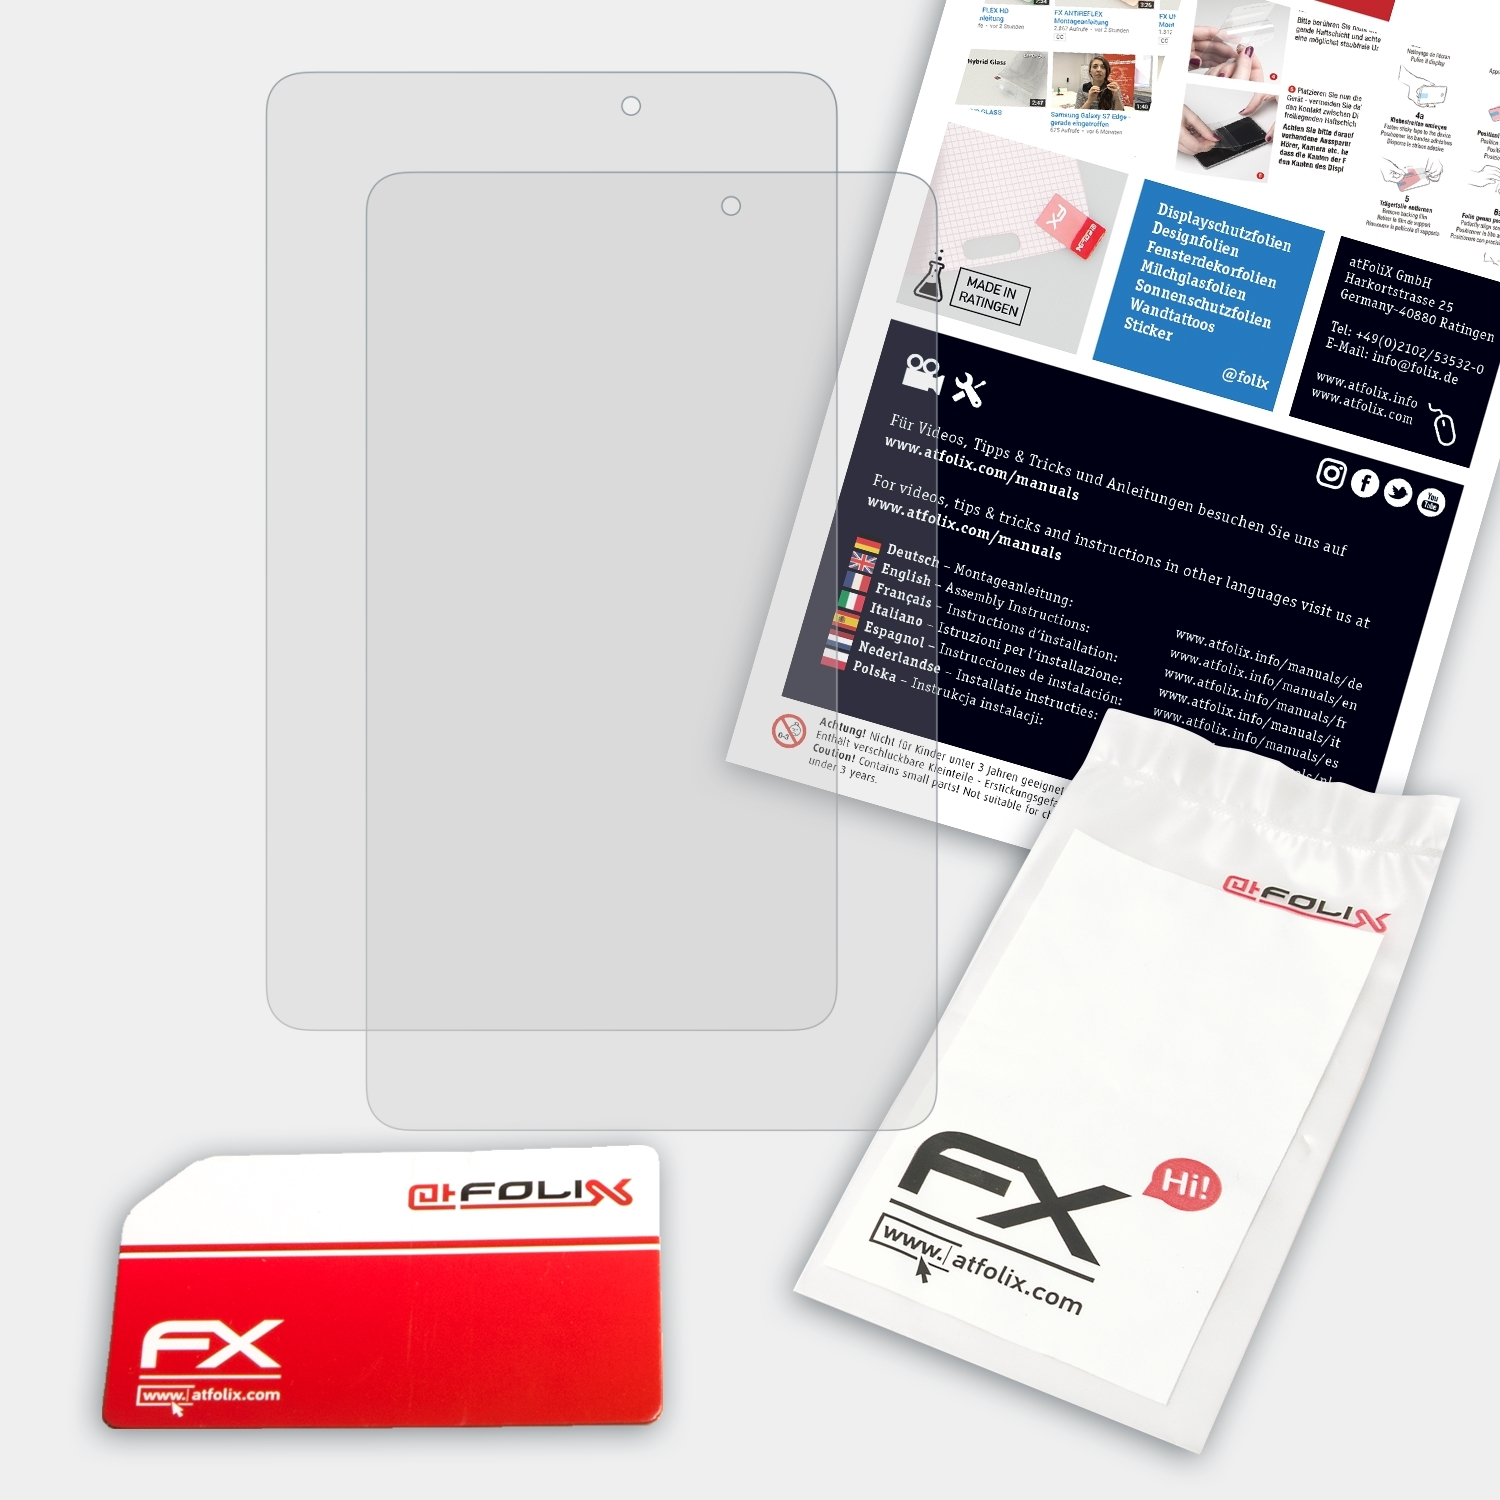 ATFOLIX 2x FX-Antireflex Acer (A1-840FHD)) Tab 8 Iconia Displayschutz(für